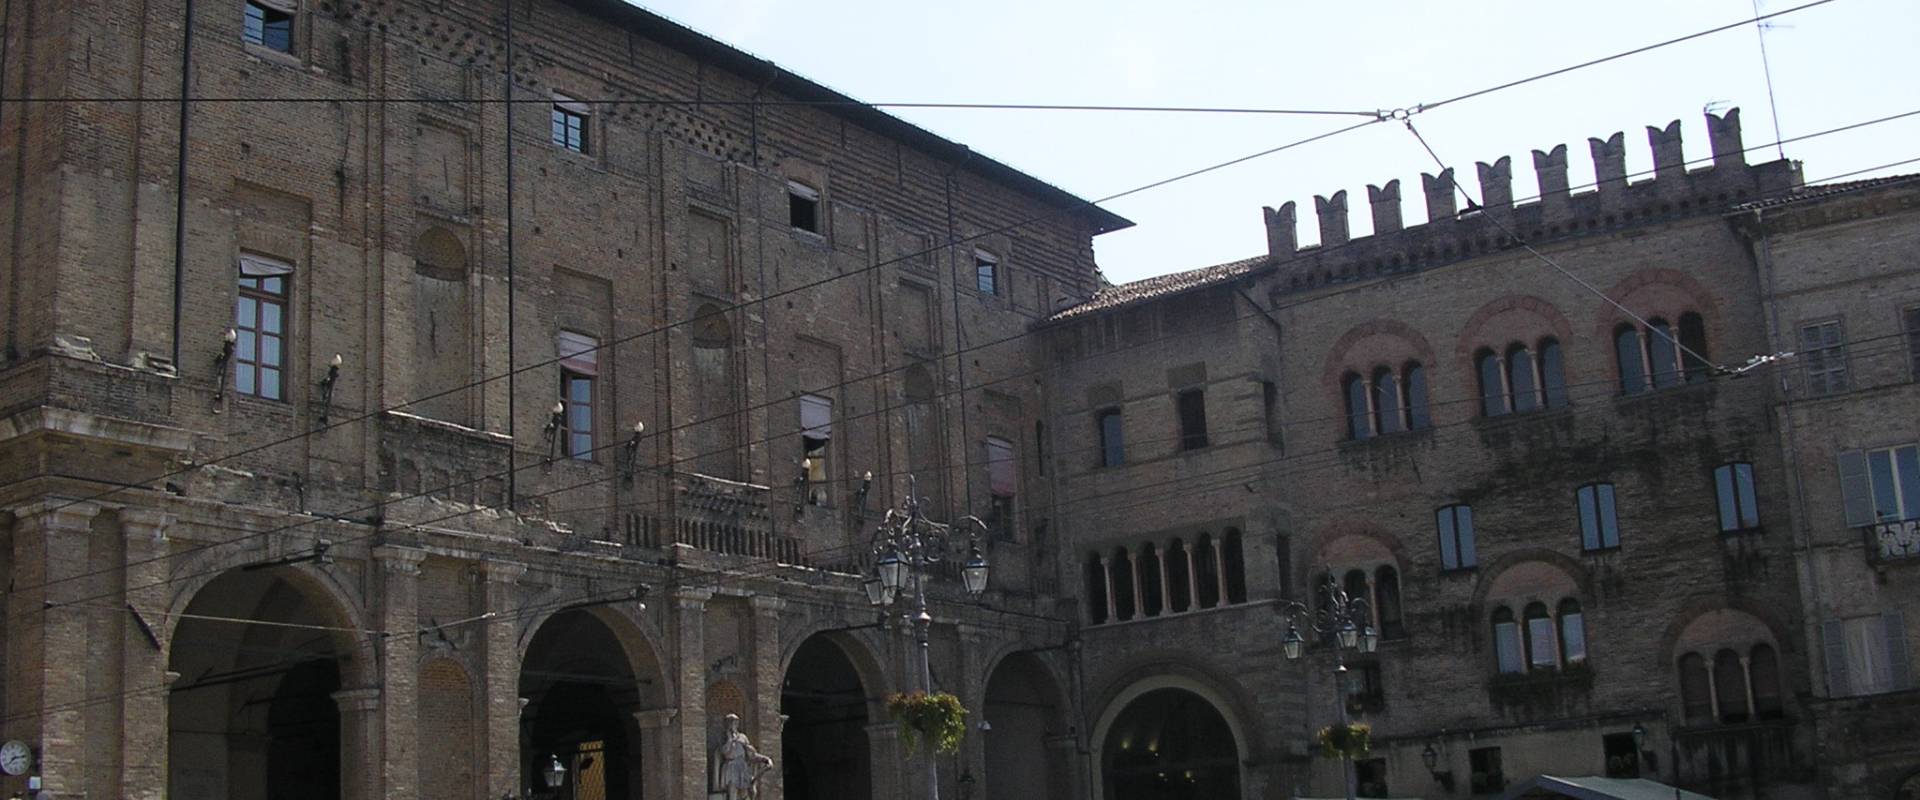 Facciata del Palazzo Comunale di Parma foto di Palladino Neil